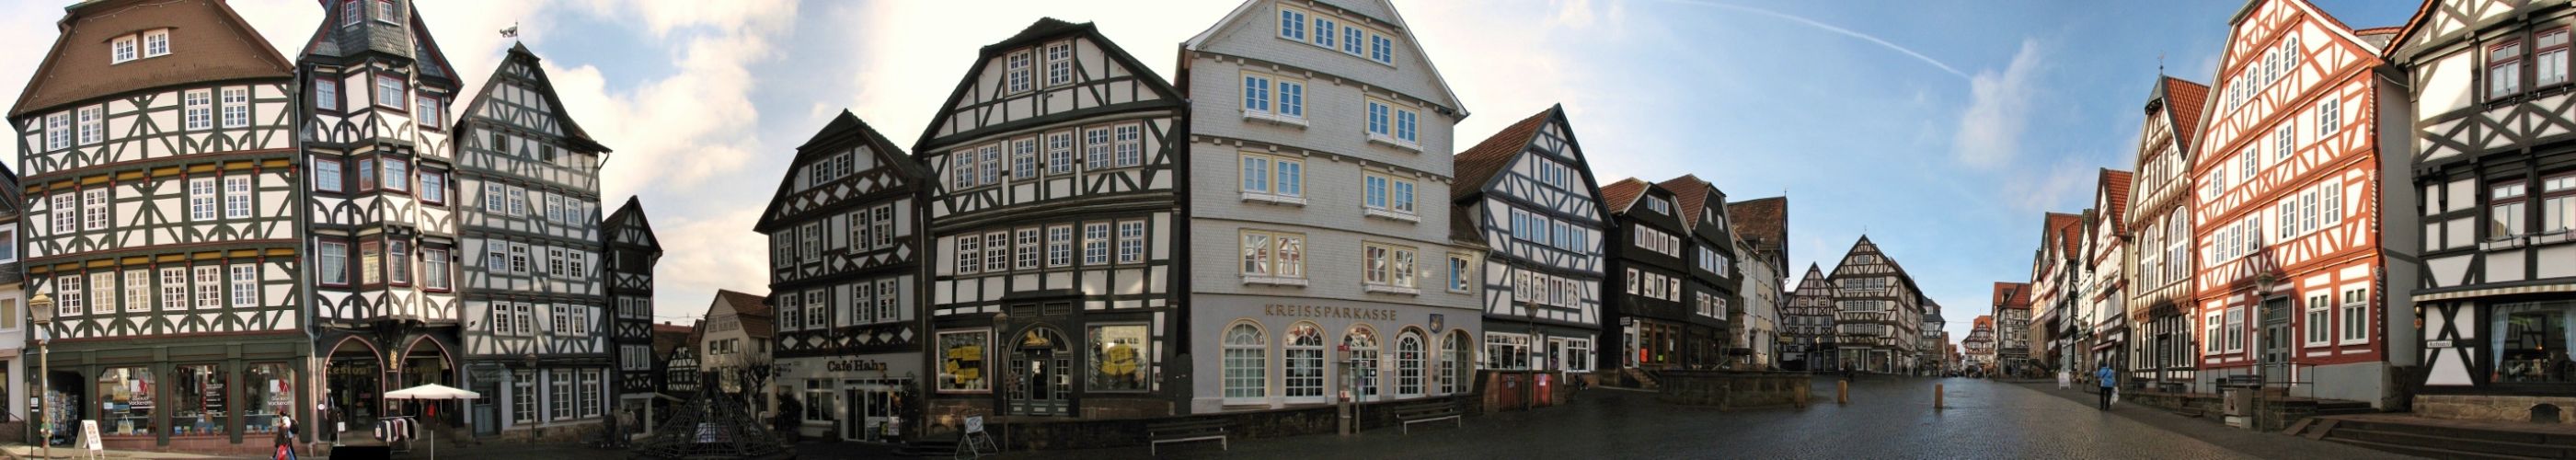 Historische Altstadt Fritzlar Edertal